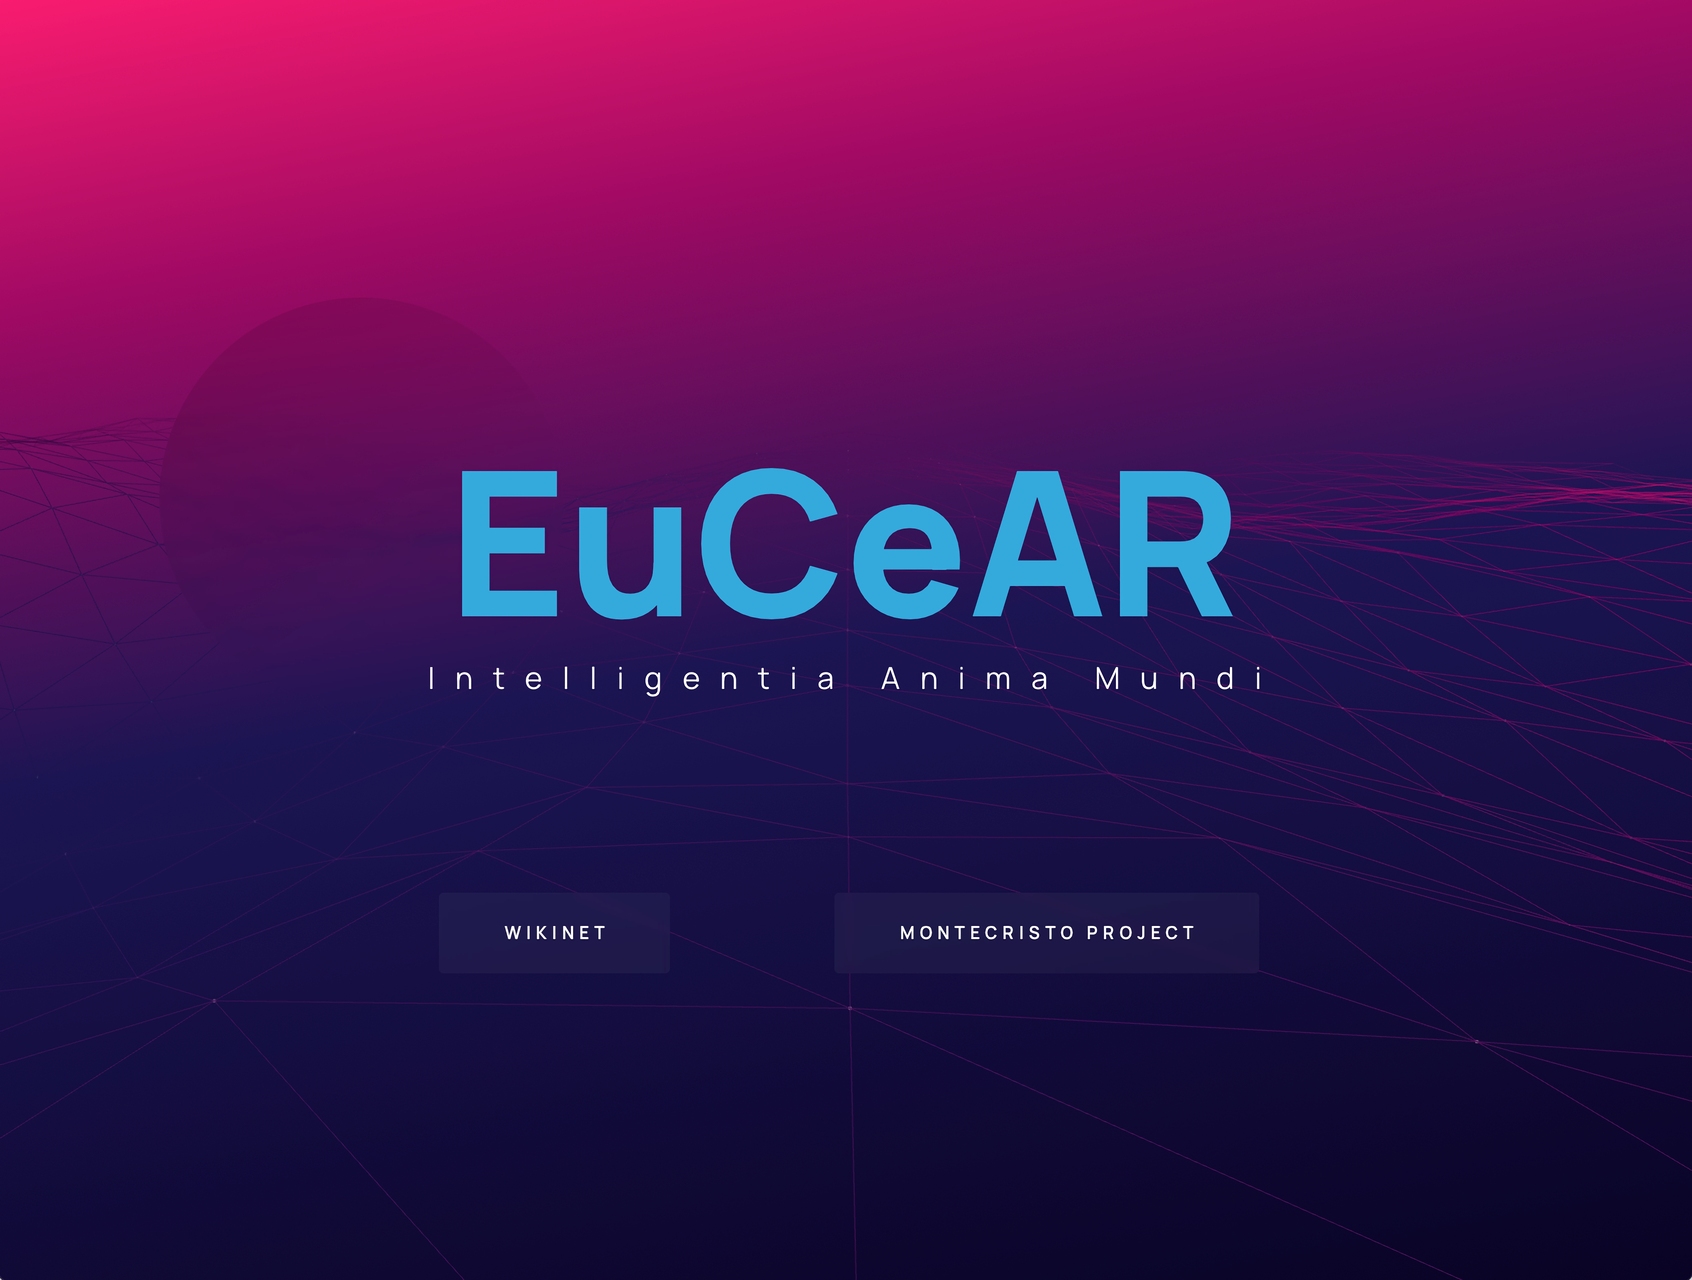 Инновациялык адабият: Эдоардо Вольпи Келлерман тарабынан түзүлгөн "EuCEAR" кыскартылган "Европалык Өркүндөтүлгөн Изилдөө Борборунун" десант баракчасы